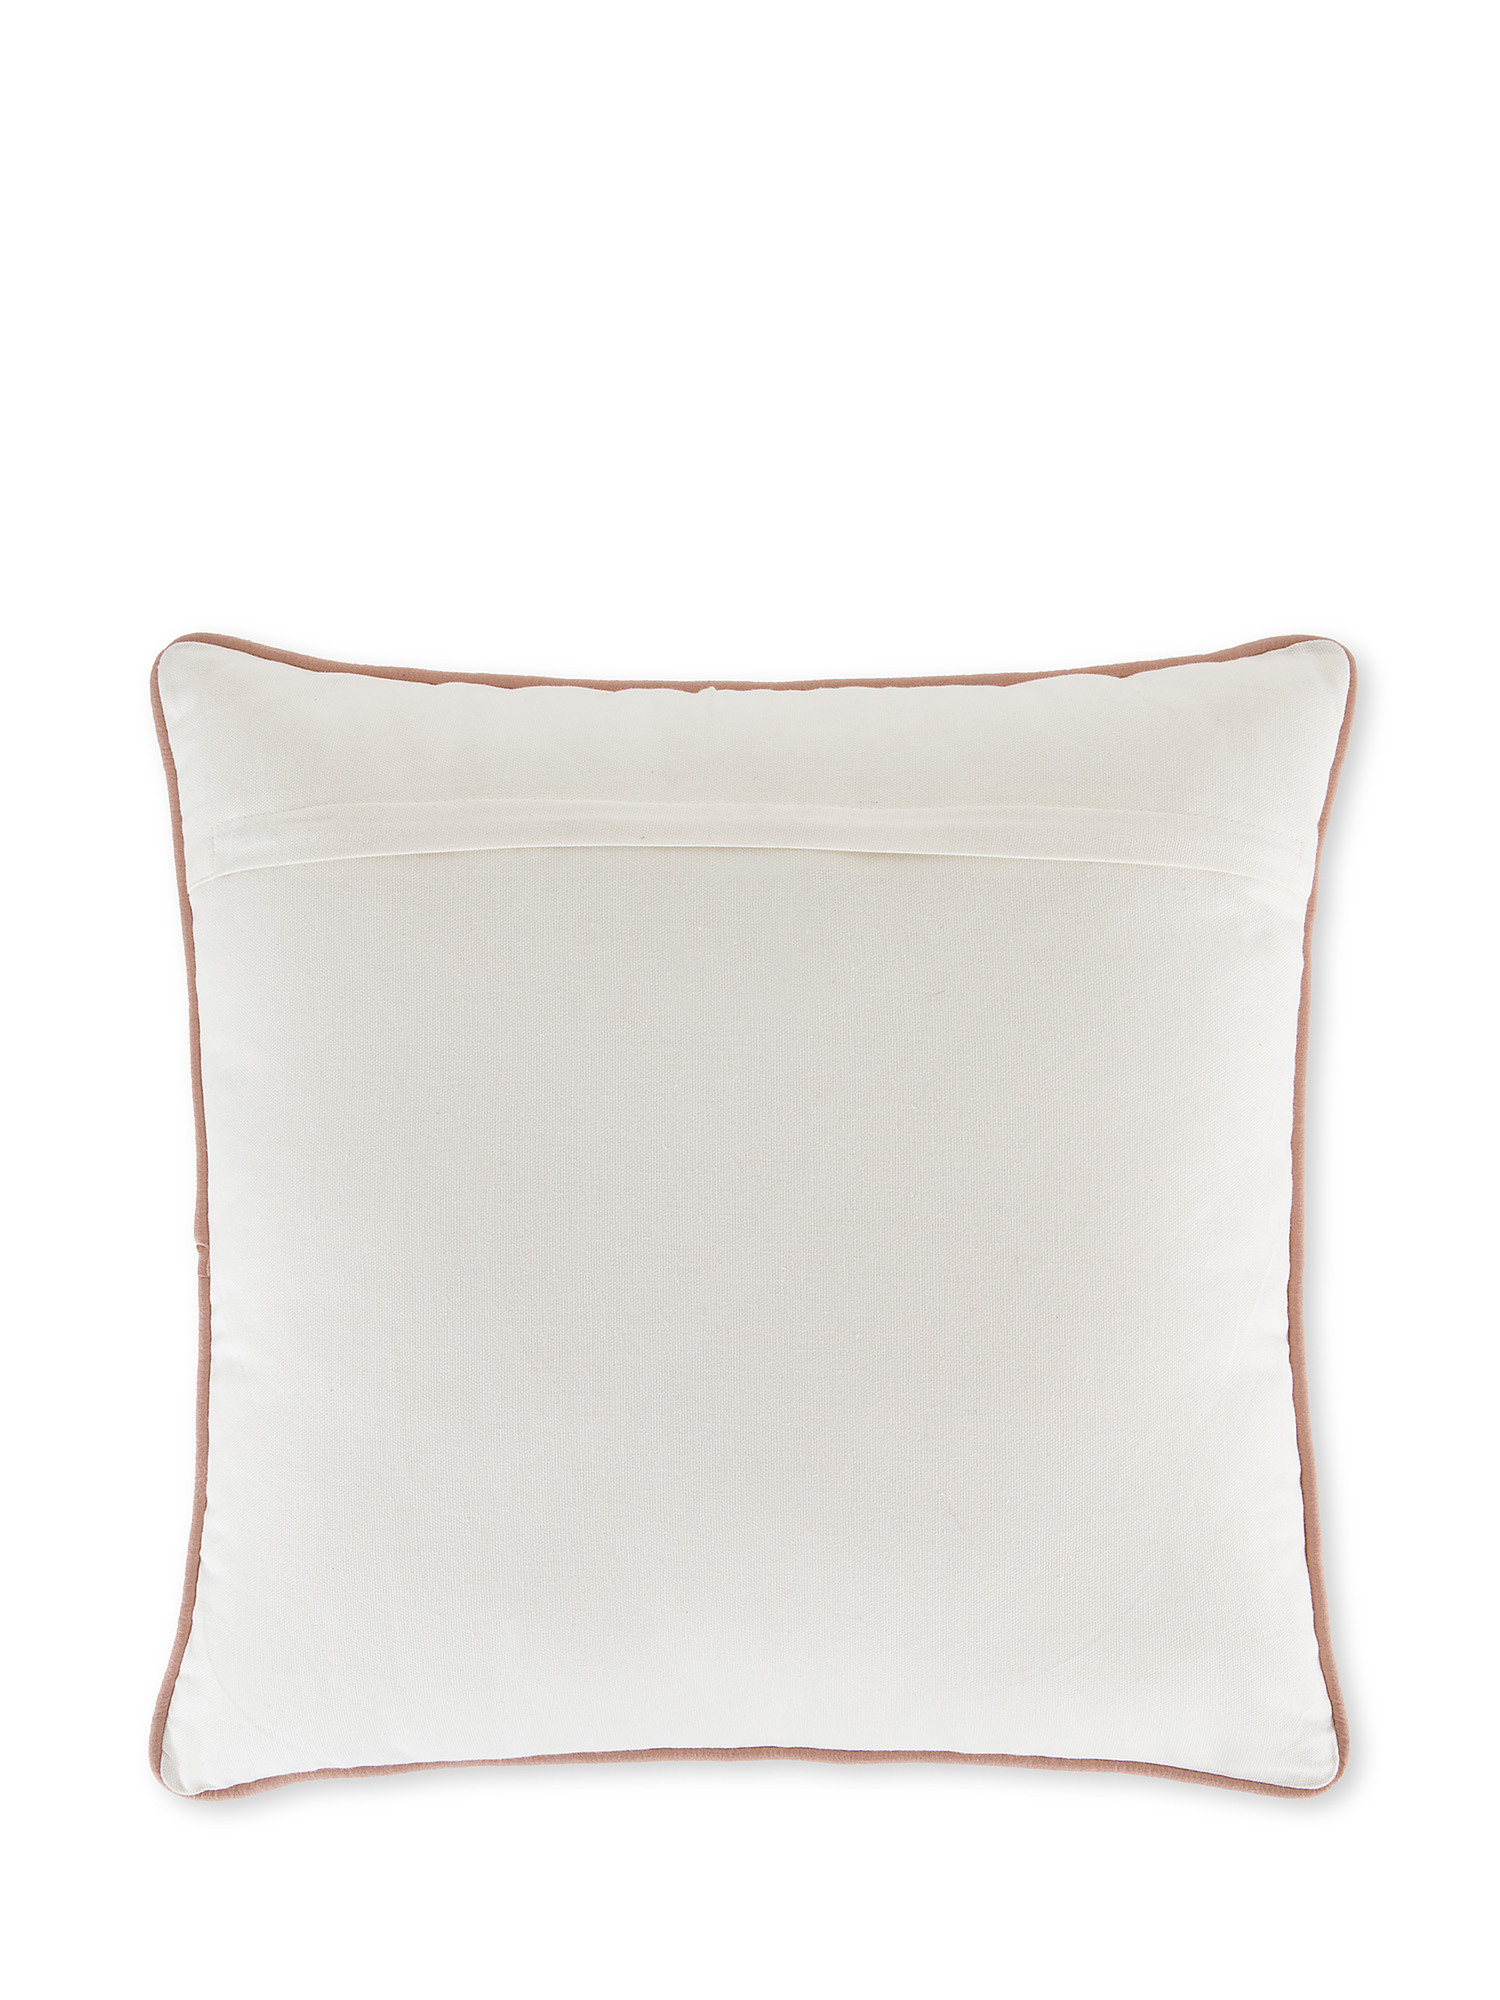 Marine embroidery cushion 45x45cm, White, large image number 1